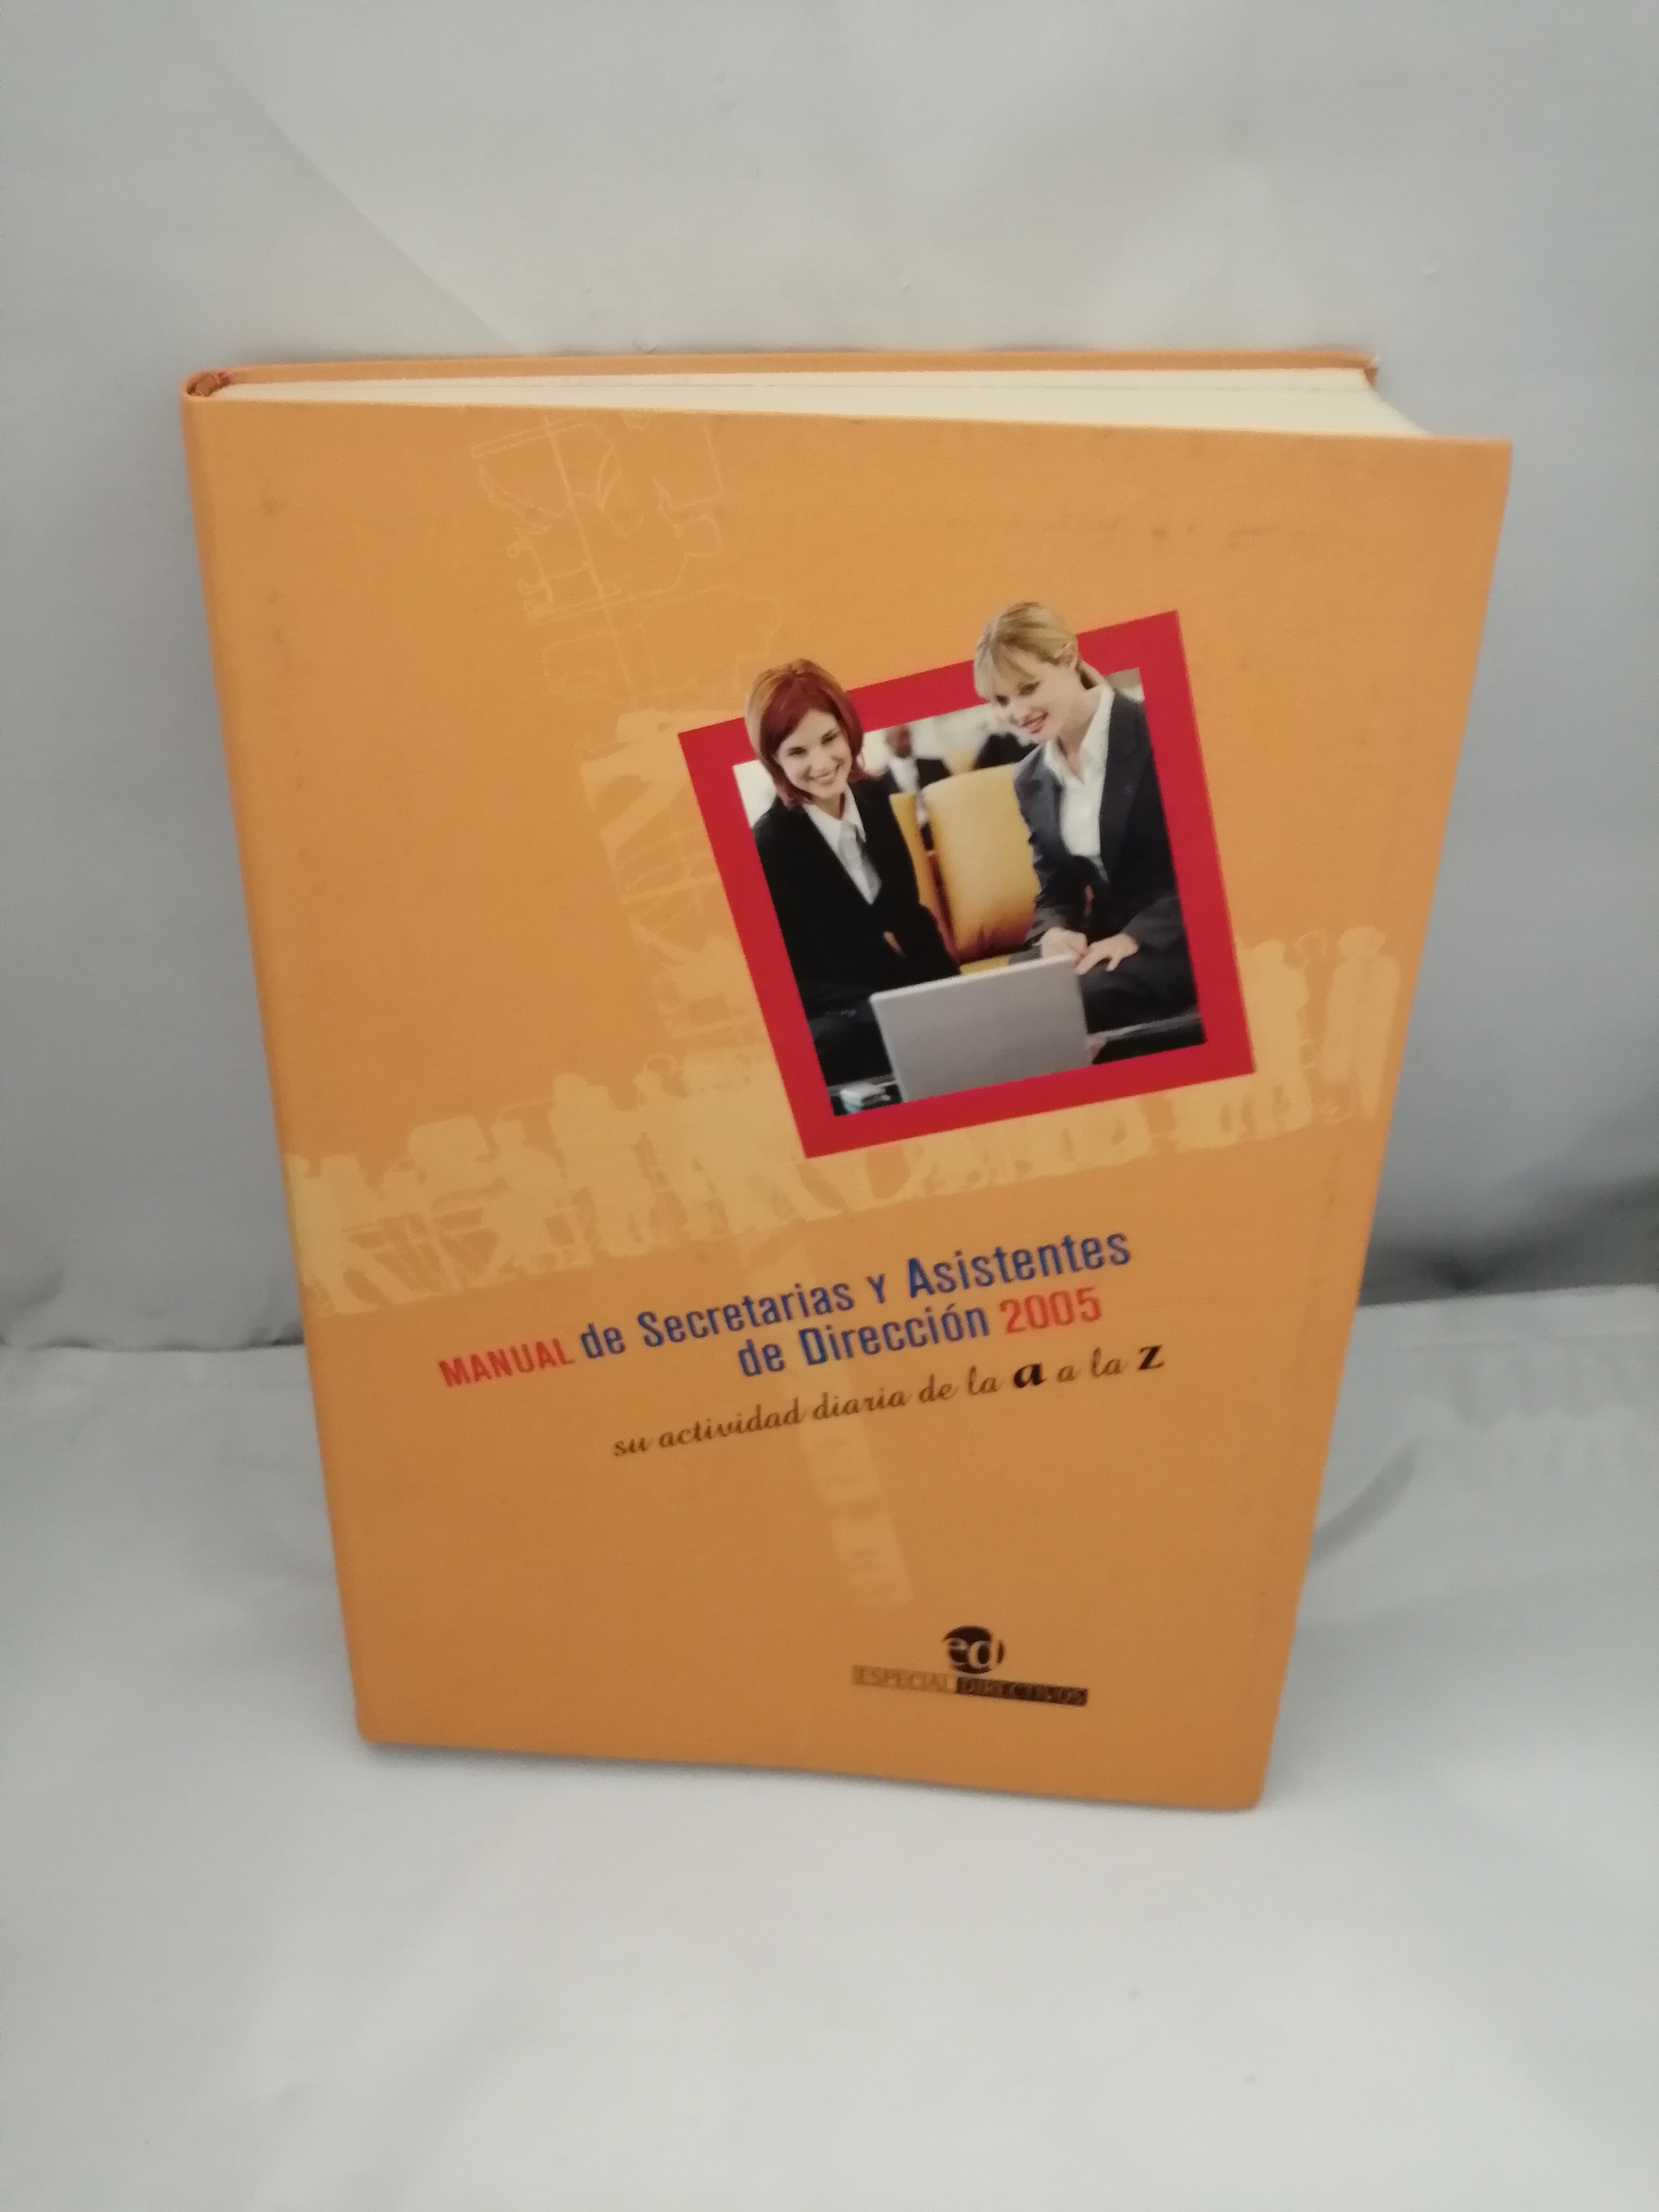 Manual de Secretarias y Asistentes de Dirección 2005: Su actividad diaria de la A a la Z - Elisa del Pino